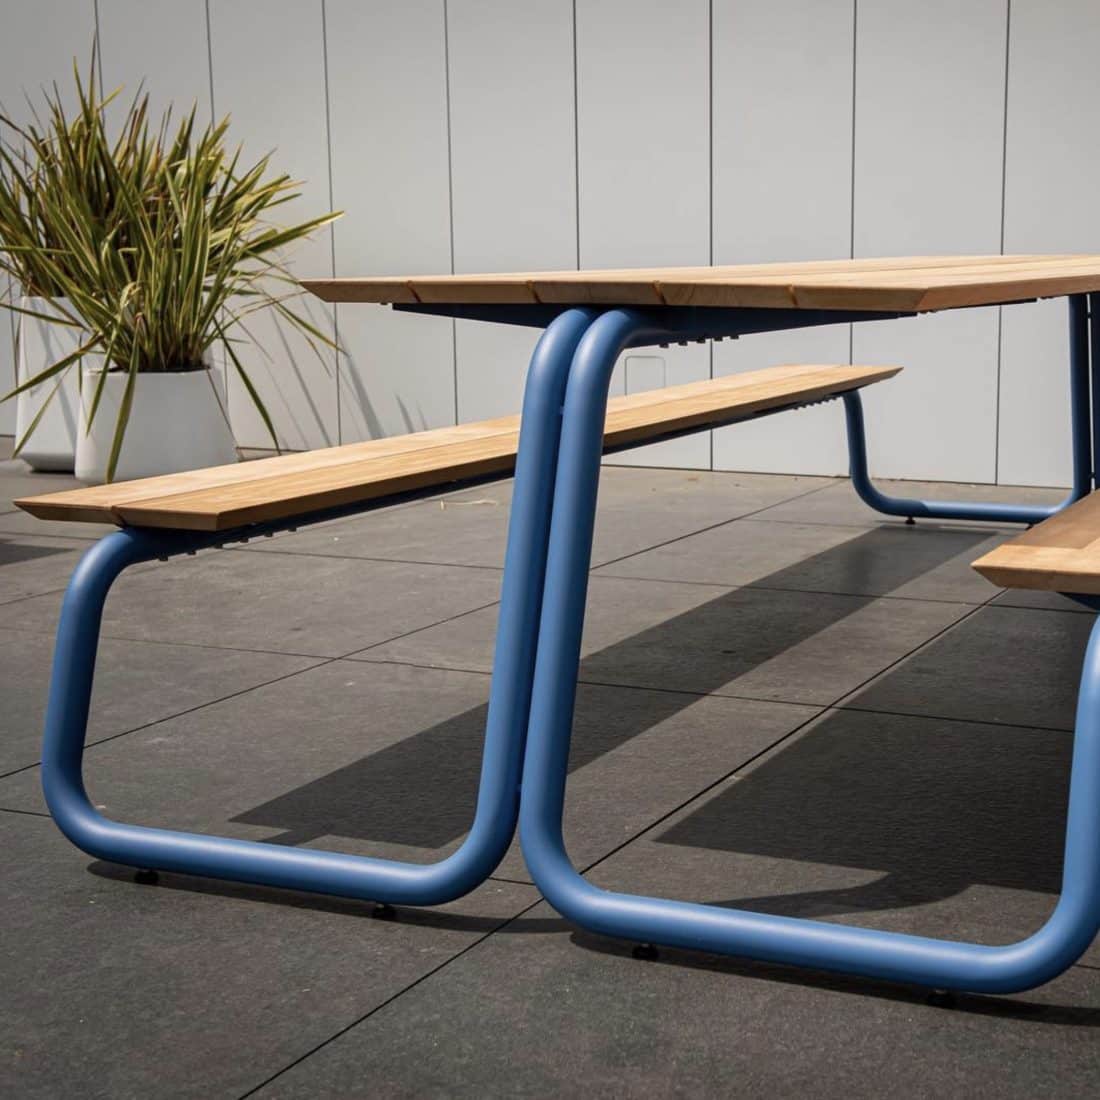 The Table by Wünder custom